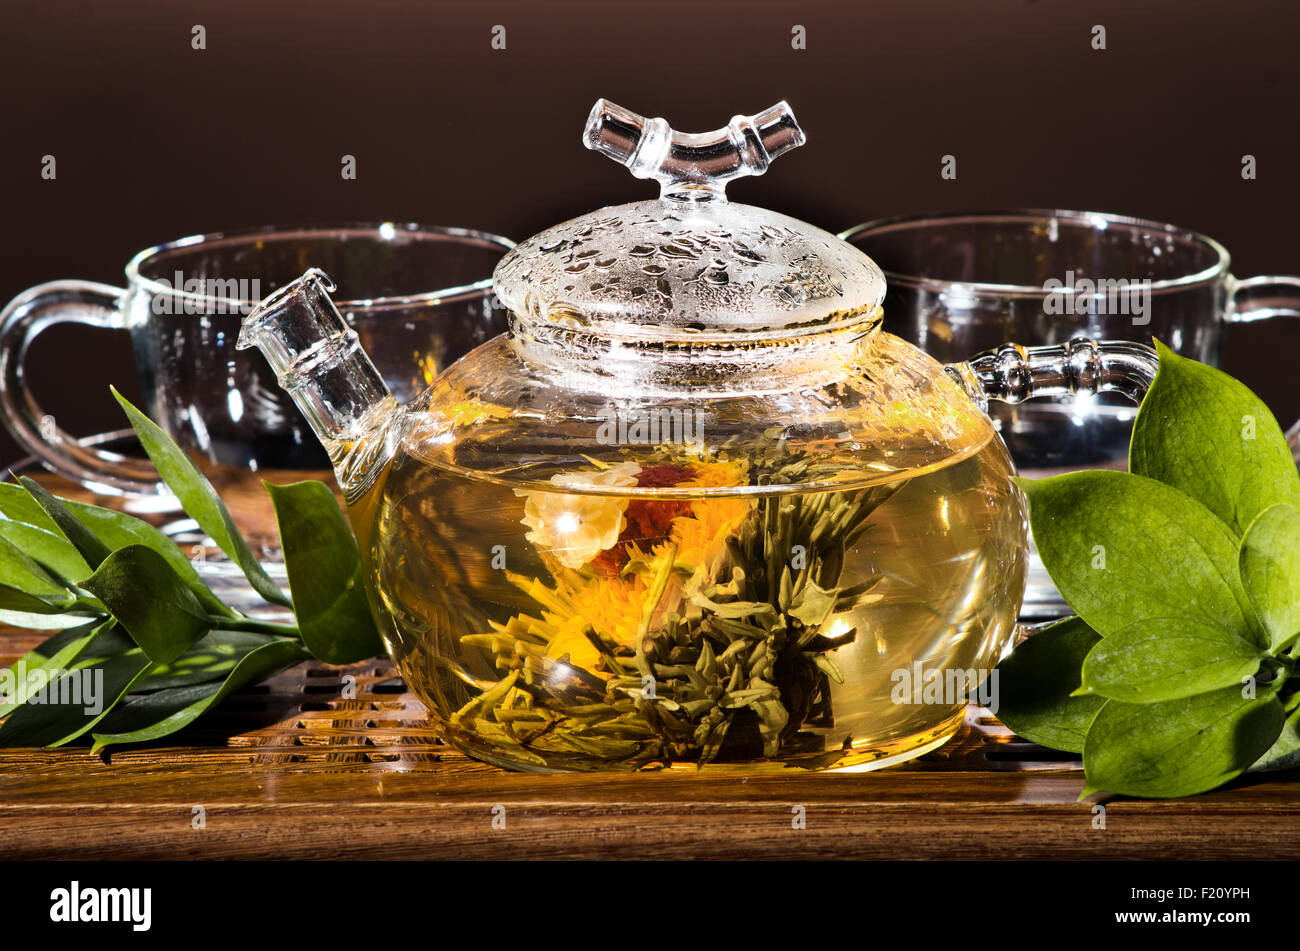 Photo horizontale de la théière en verre avec du thé vert dans la tasse, sur le backgrpund brun, gros plan Banque D'Images